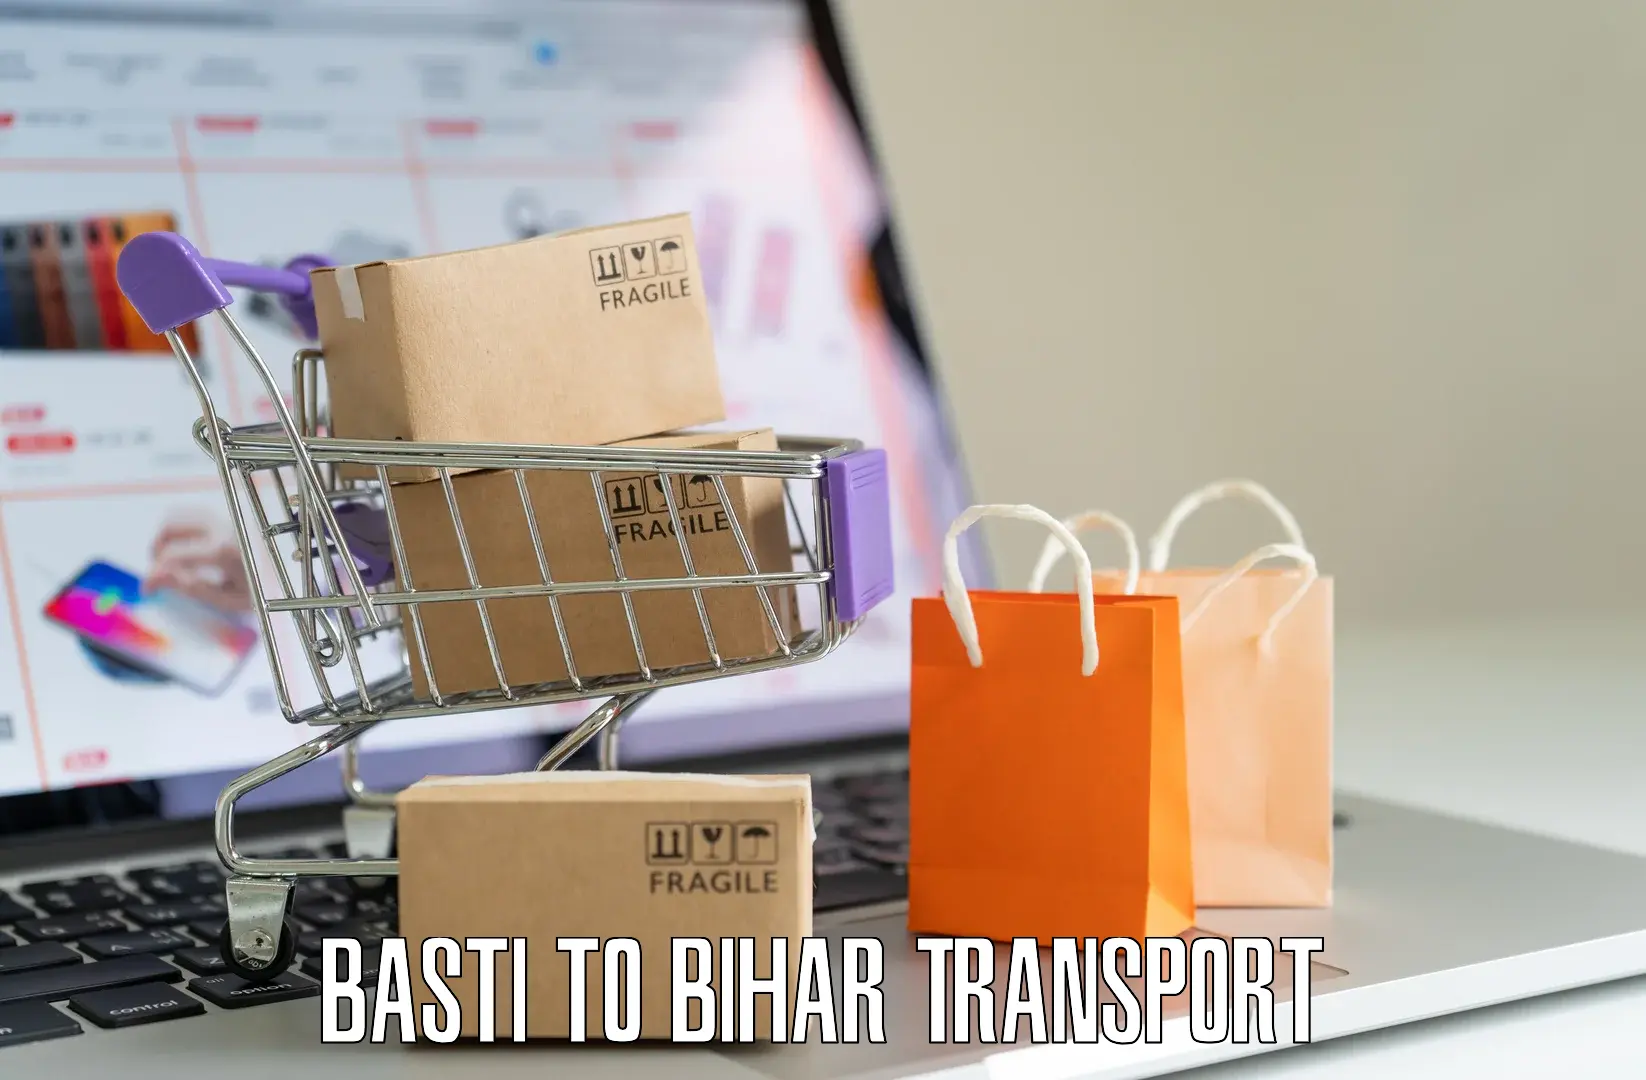 Transport in sharing Basti to Barachati